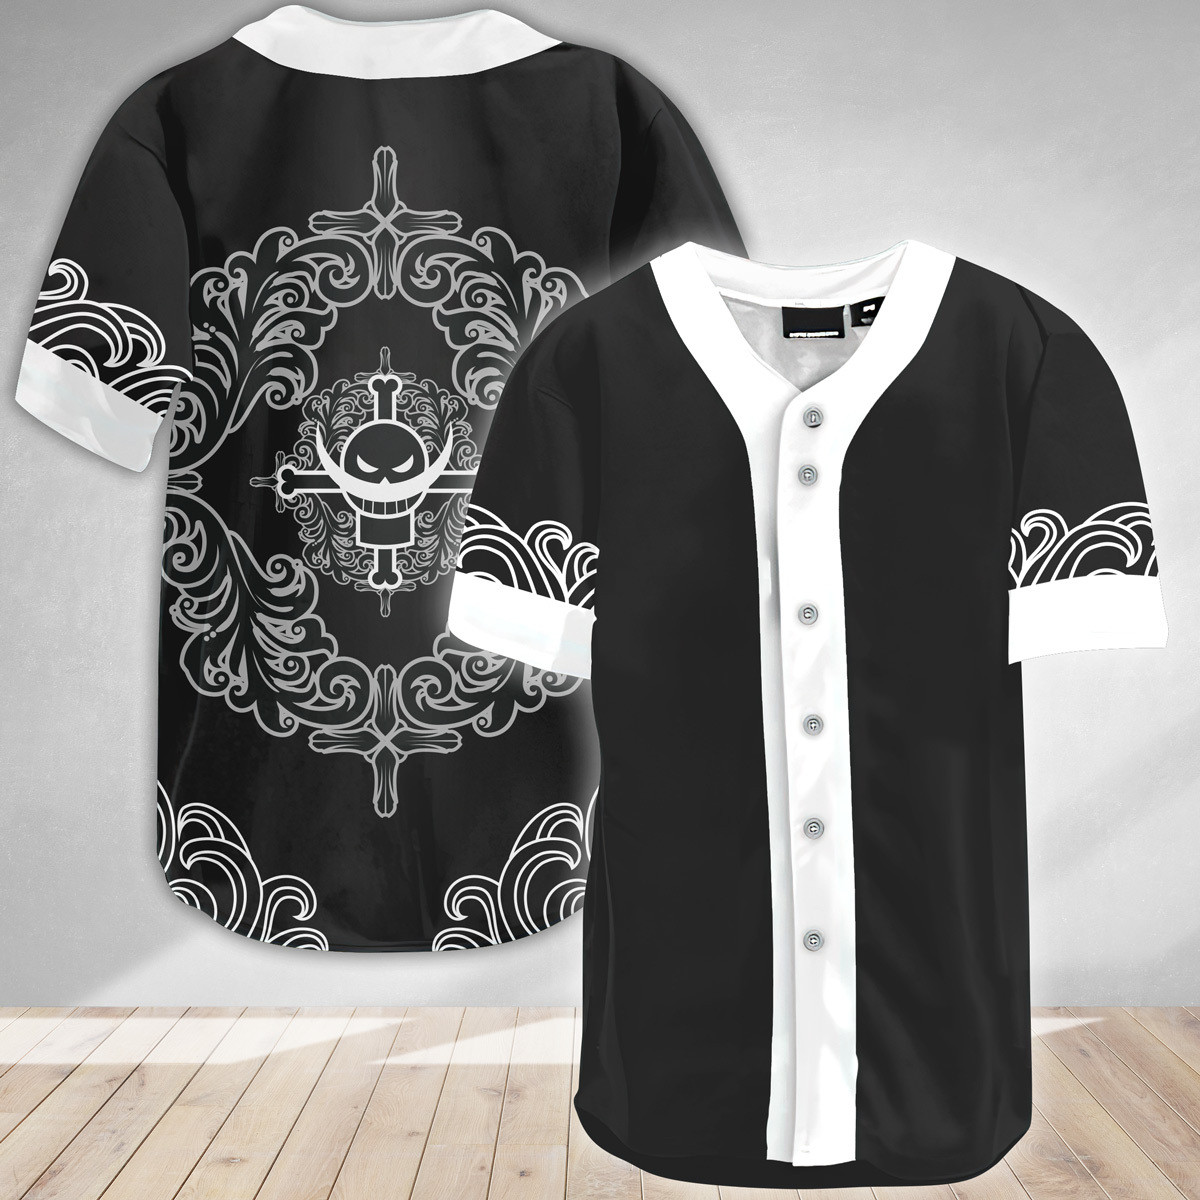 Summer Whitebeard One Piece Baseball Jersey, Unisex Jersey Shirt for Men Women